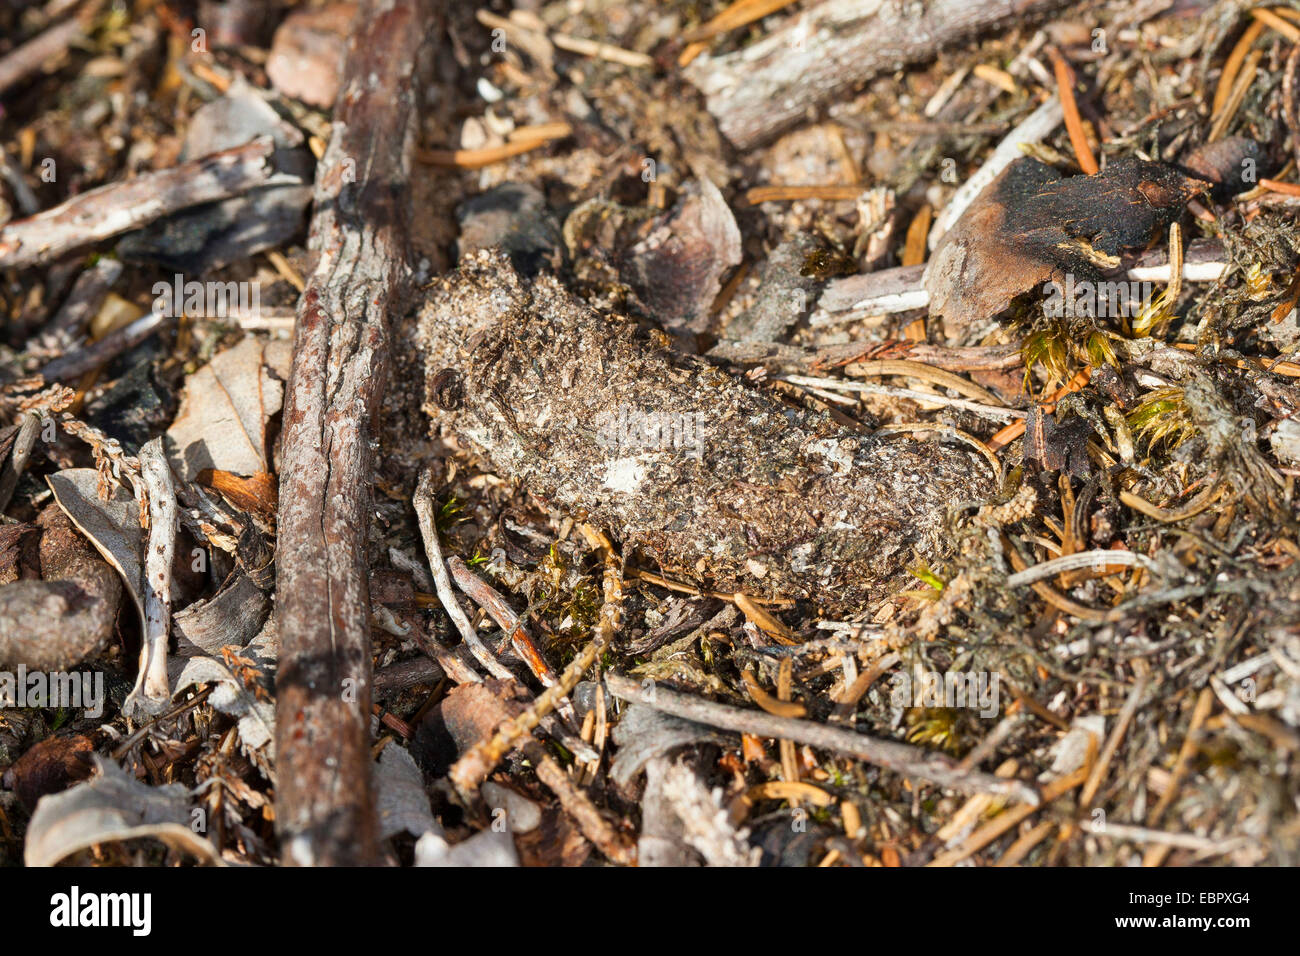 Sac à main-Spider web (Atypus affinis), tube de soie qui est partiellement caché sous terre, Allemagne Banque D'Images